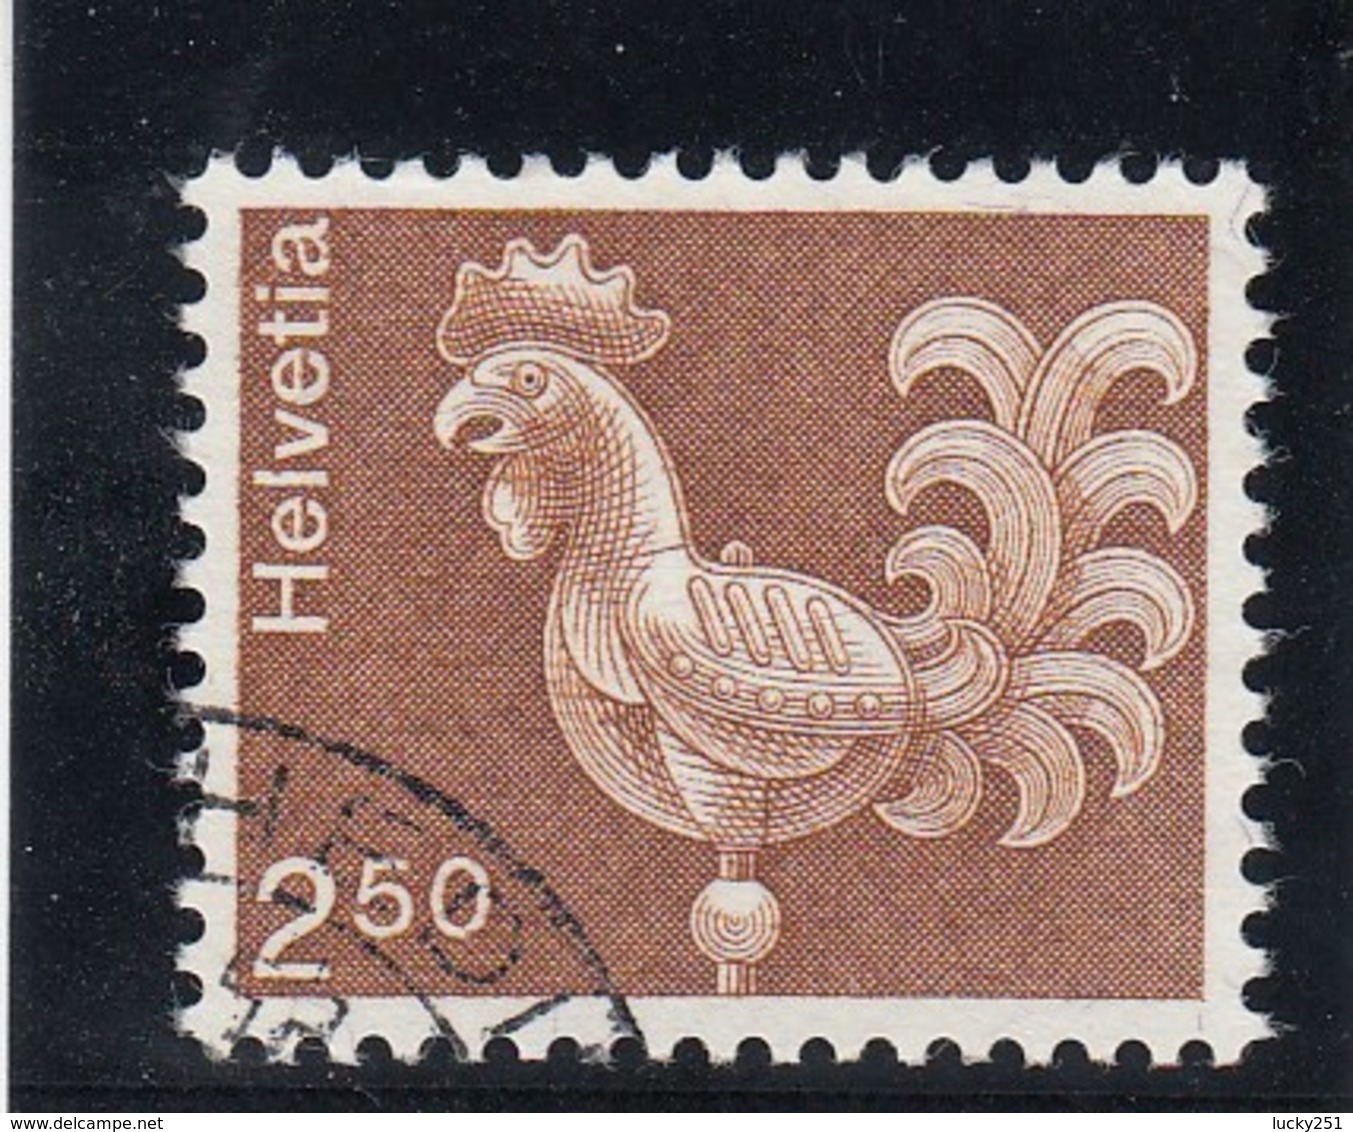 Suisse - 1975 - Oblit. - N° YT 991 - Coq - Usados